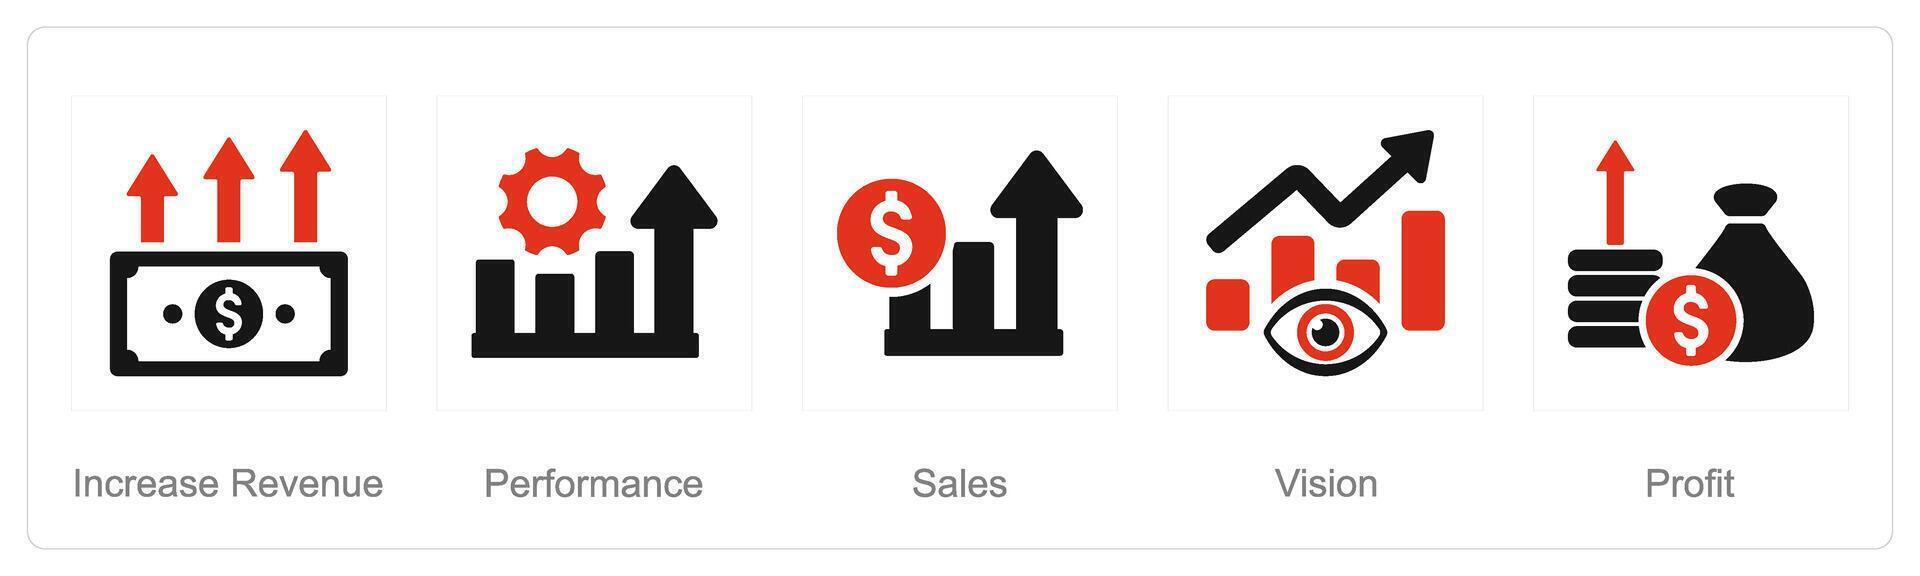 en uppsättning av 5 öka försäljning ikoner som öka försäljning, prestanda, försäljning vektor